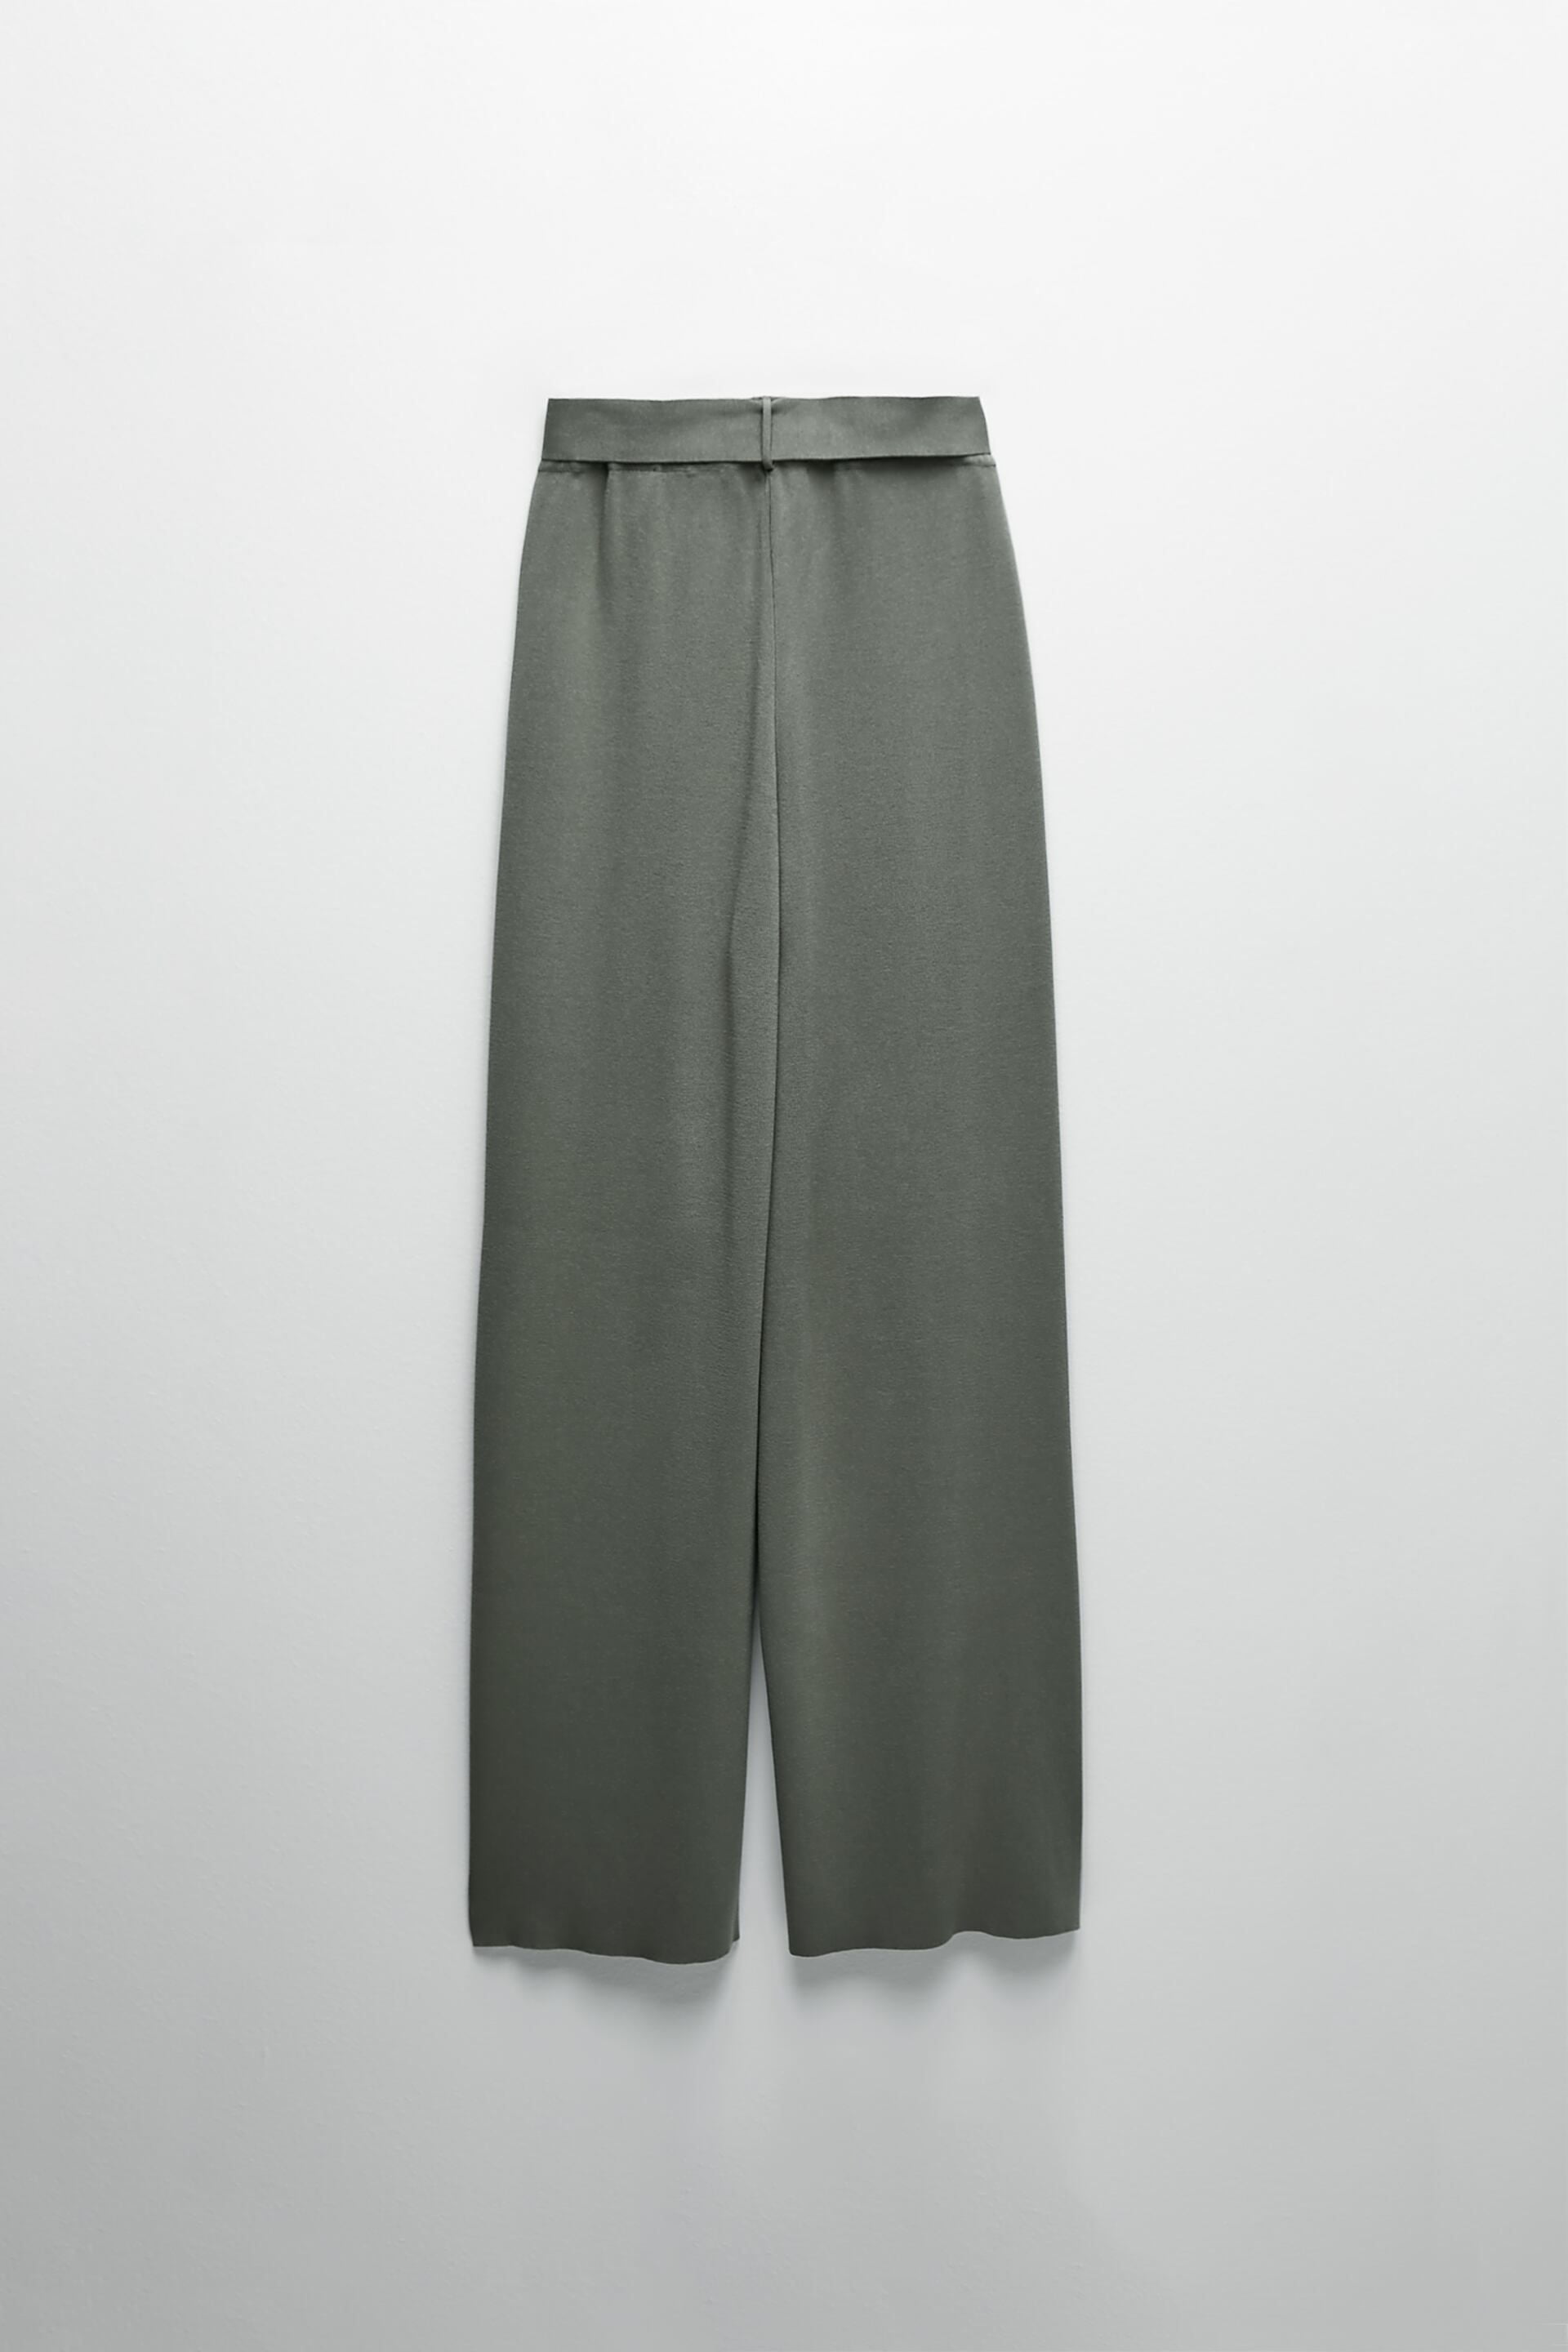 Quần Thun Dài Thắt Lưng Nữ Zara Wide Leg Belted Pants Khaki